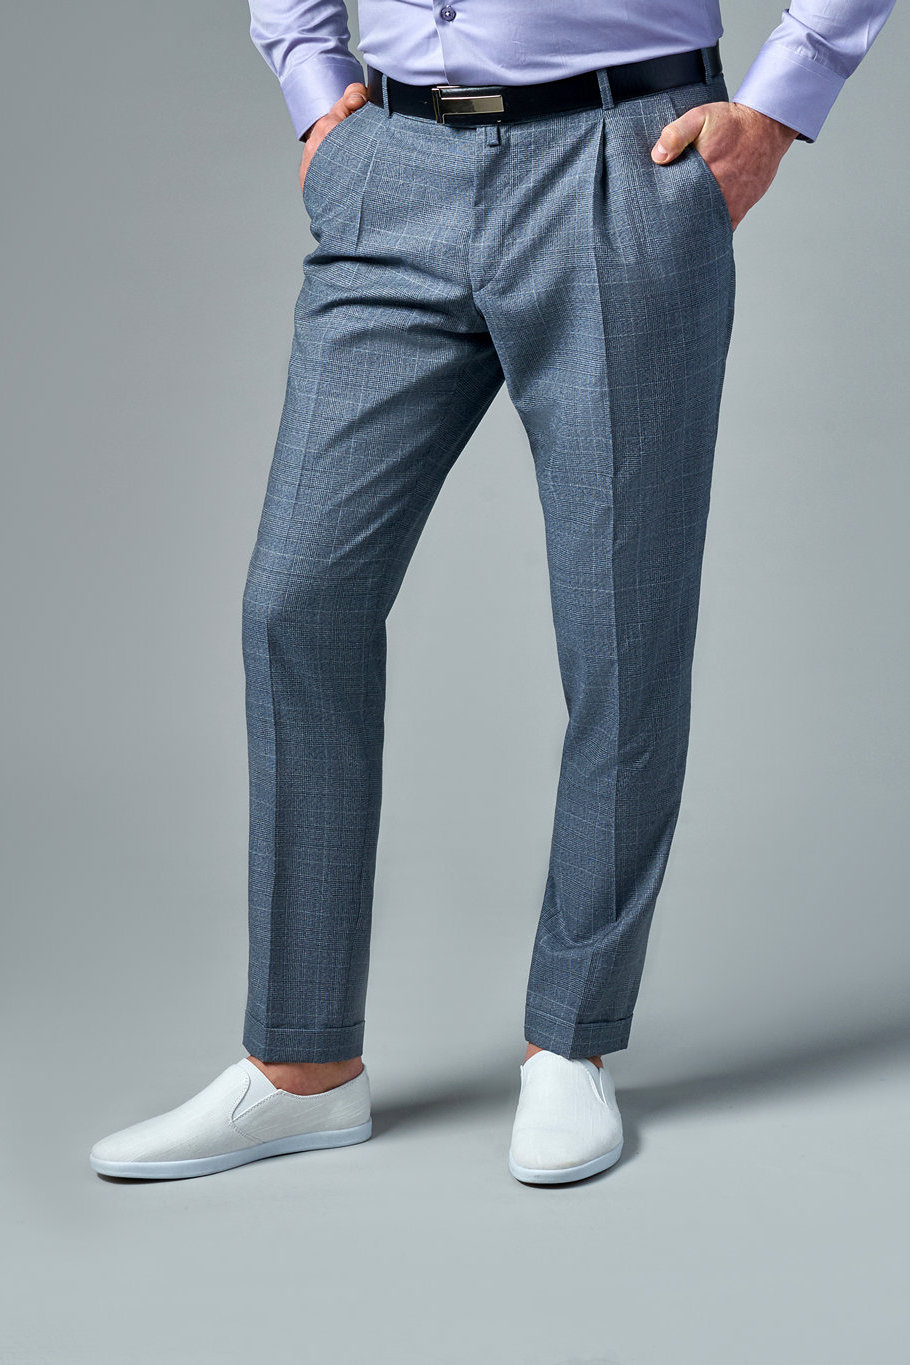 Мужские домашние штаны: самые популярные модели и материалы Выбираем мужские брюки из хлопка и других материалов На что обратить внимание при покупке домашних штанов для мужчин